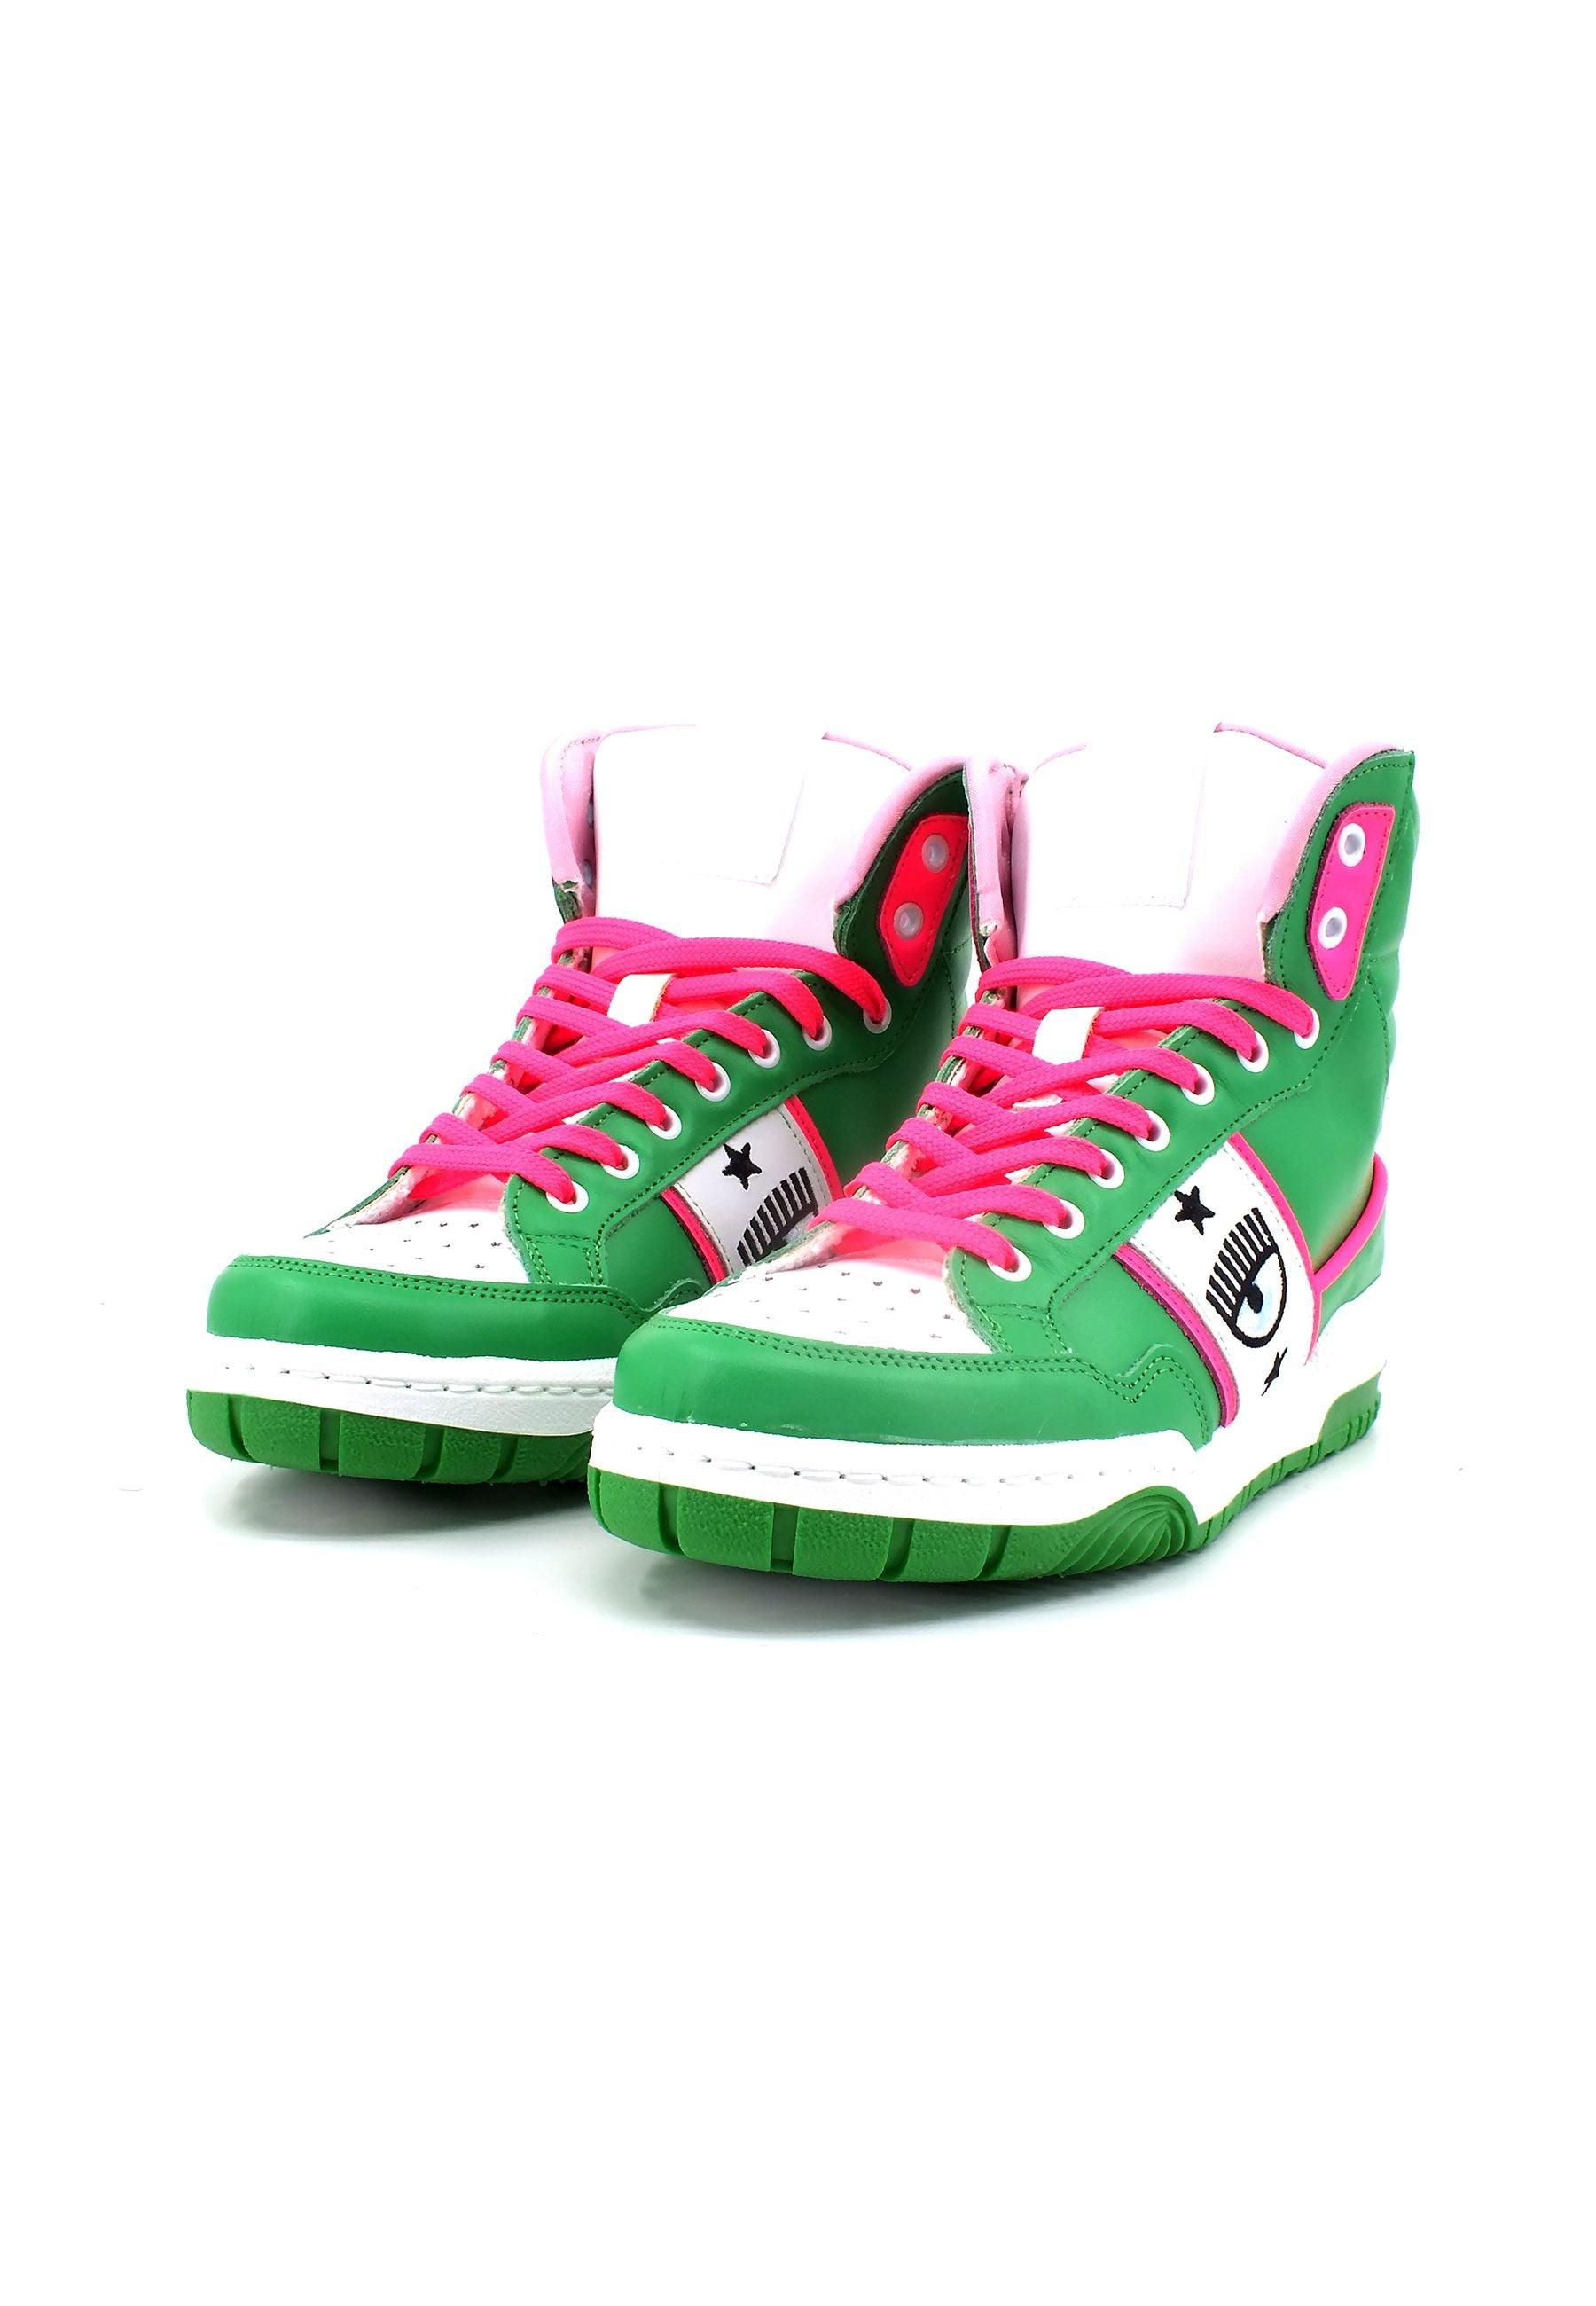 CHIARA FERRAGNI Sneaker High Donna Green Pink Fluo CF3114-078 - Sandrini Calzature e Abbigliamento